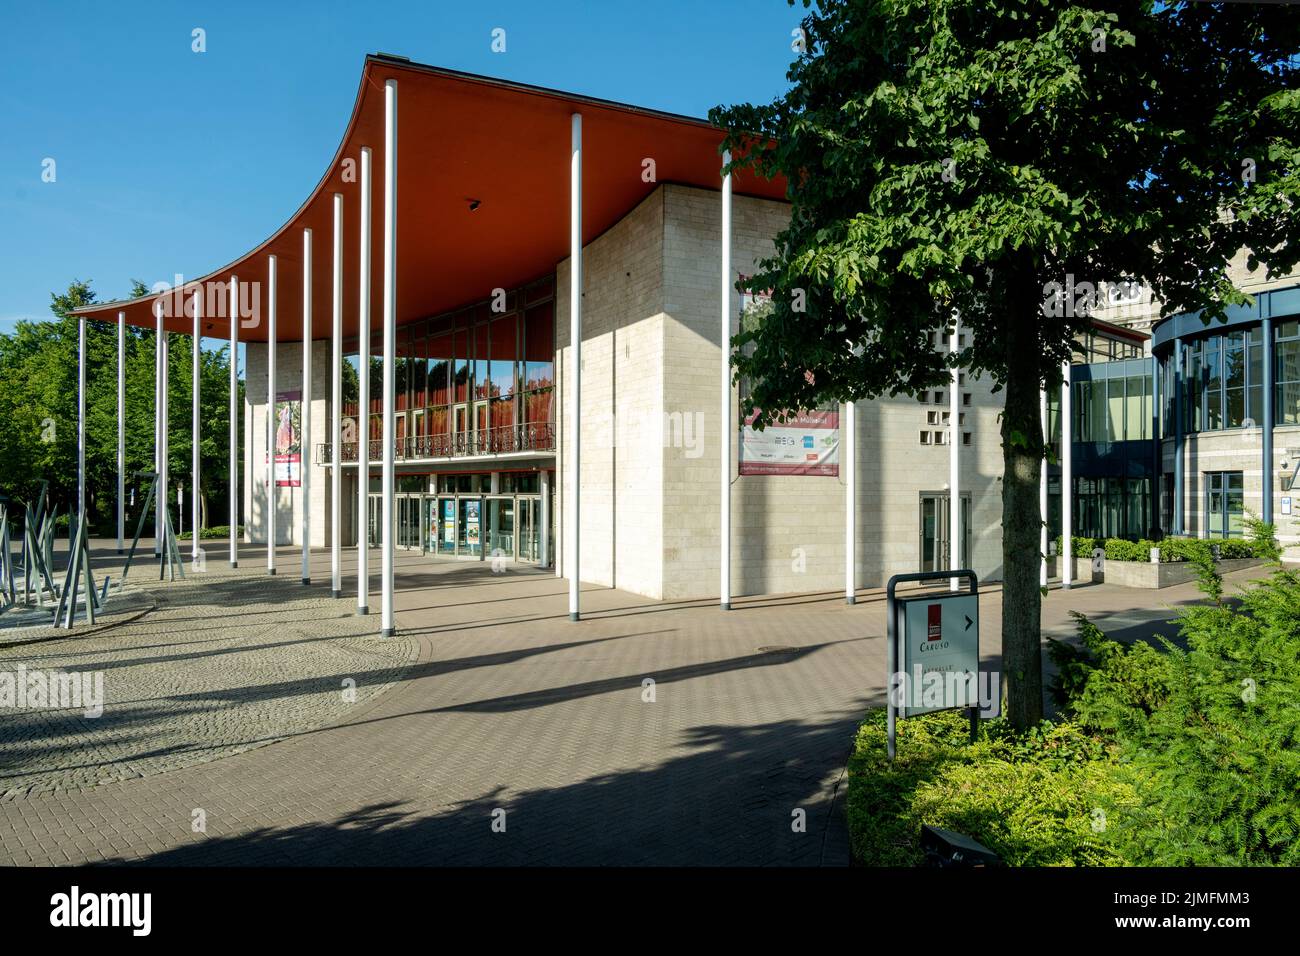 Deutschland, Nordrhein-Westfalen, Mühlheim an der Ruhr, Stadthalle Stock Photo